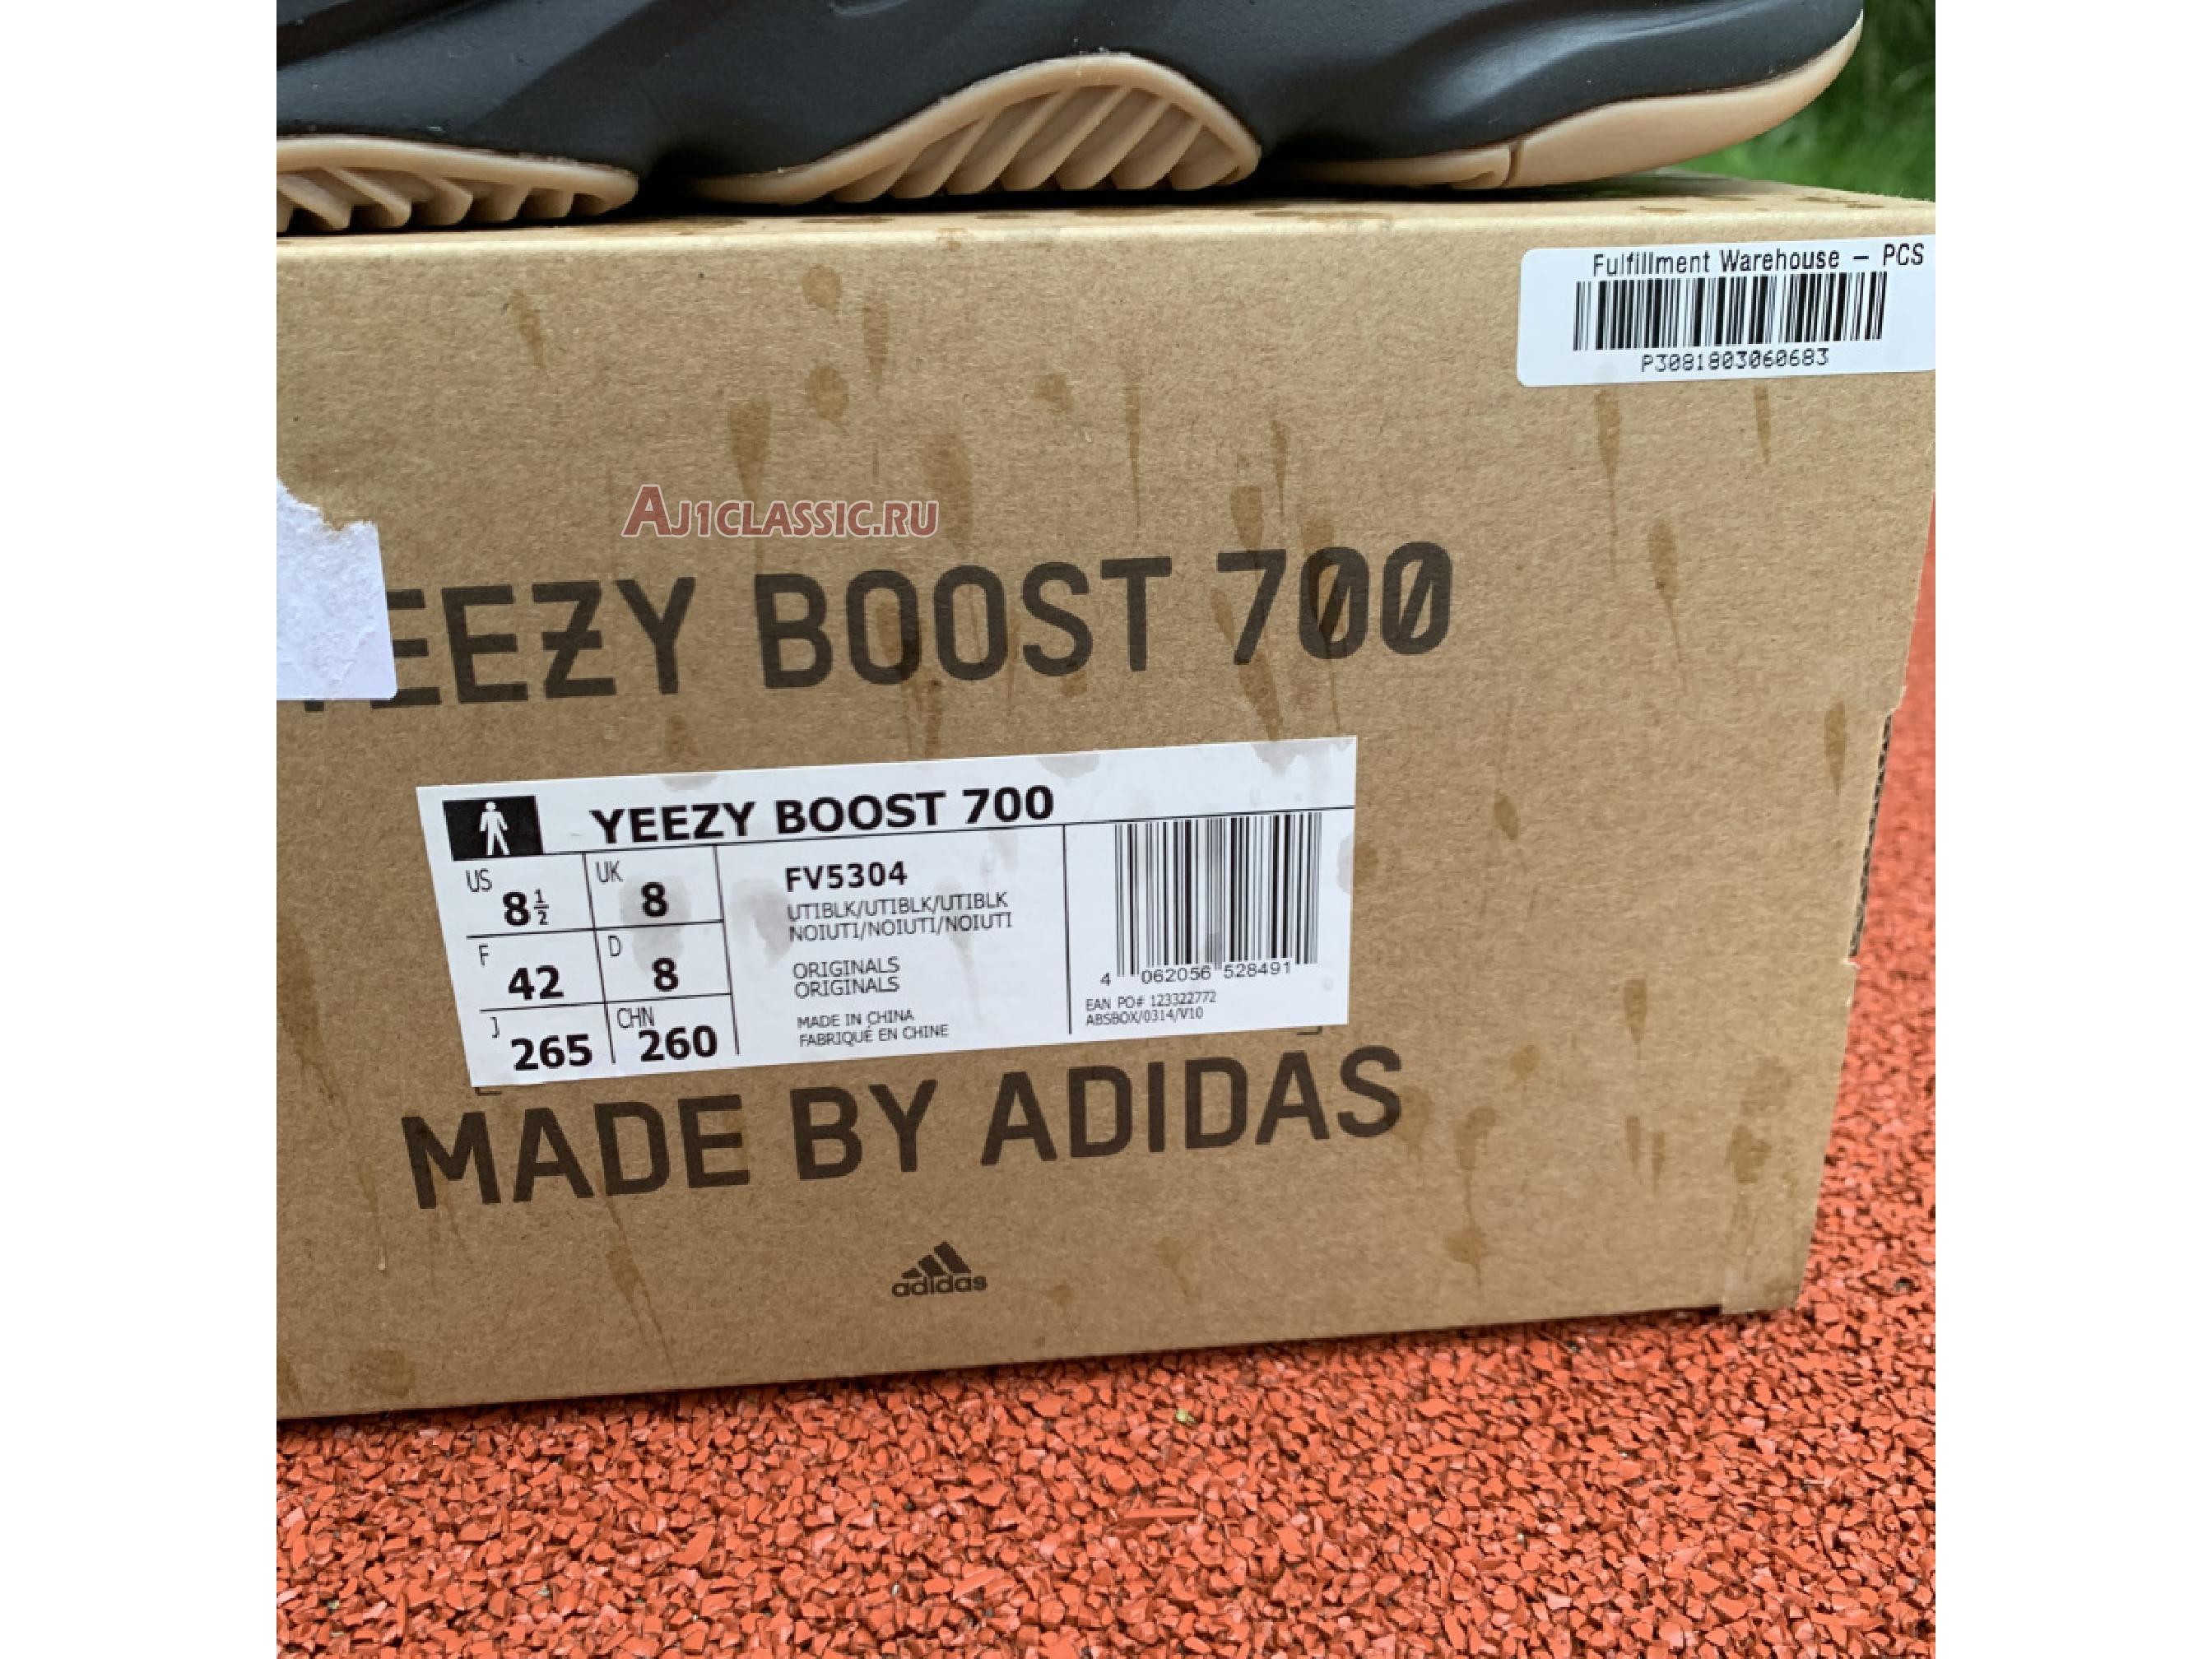 Adidas Yeezy Boost 700 "Utility Black" FV5304